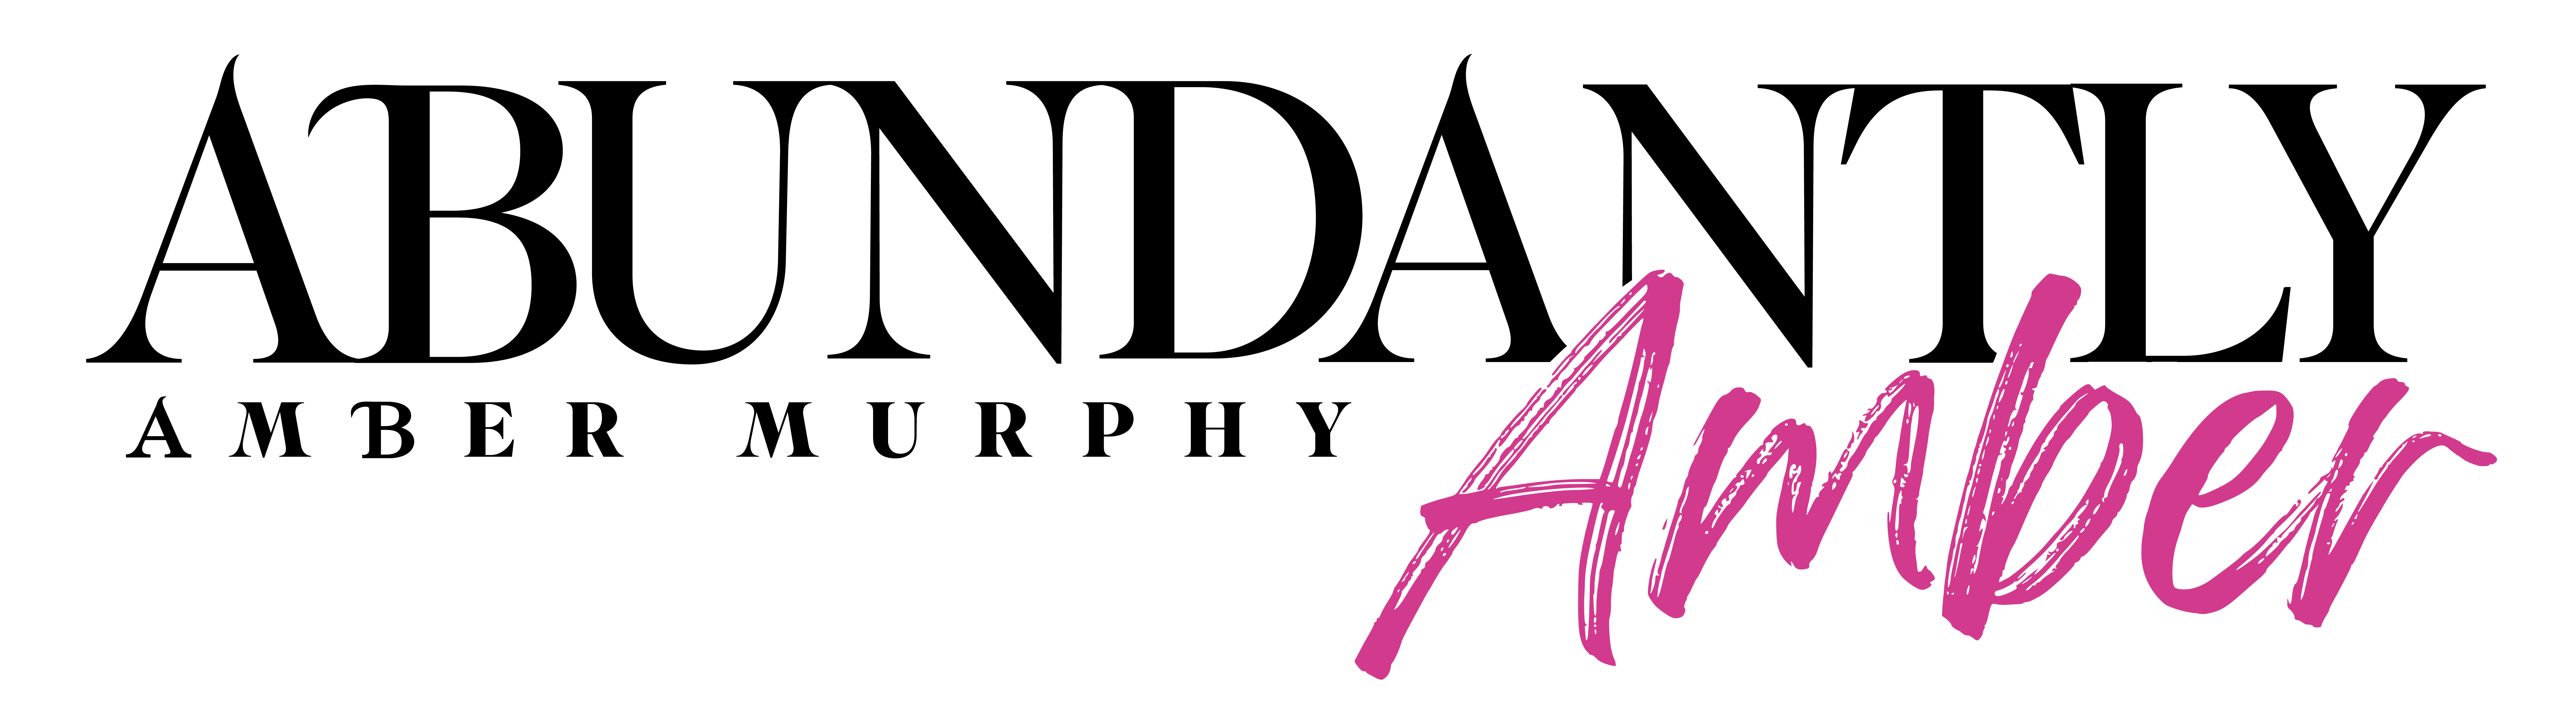 Amber N Murphy logo